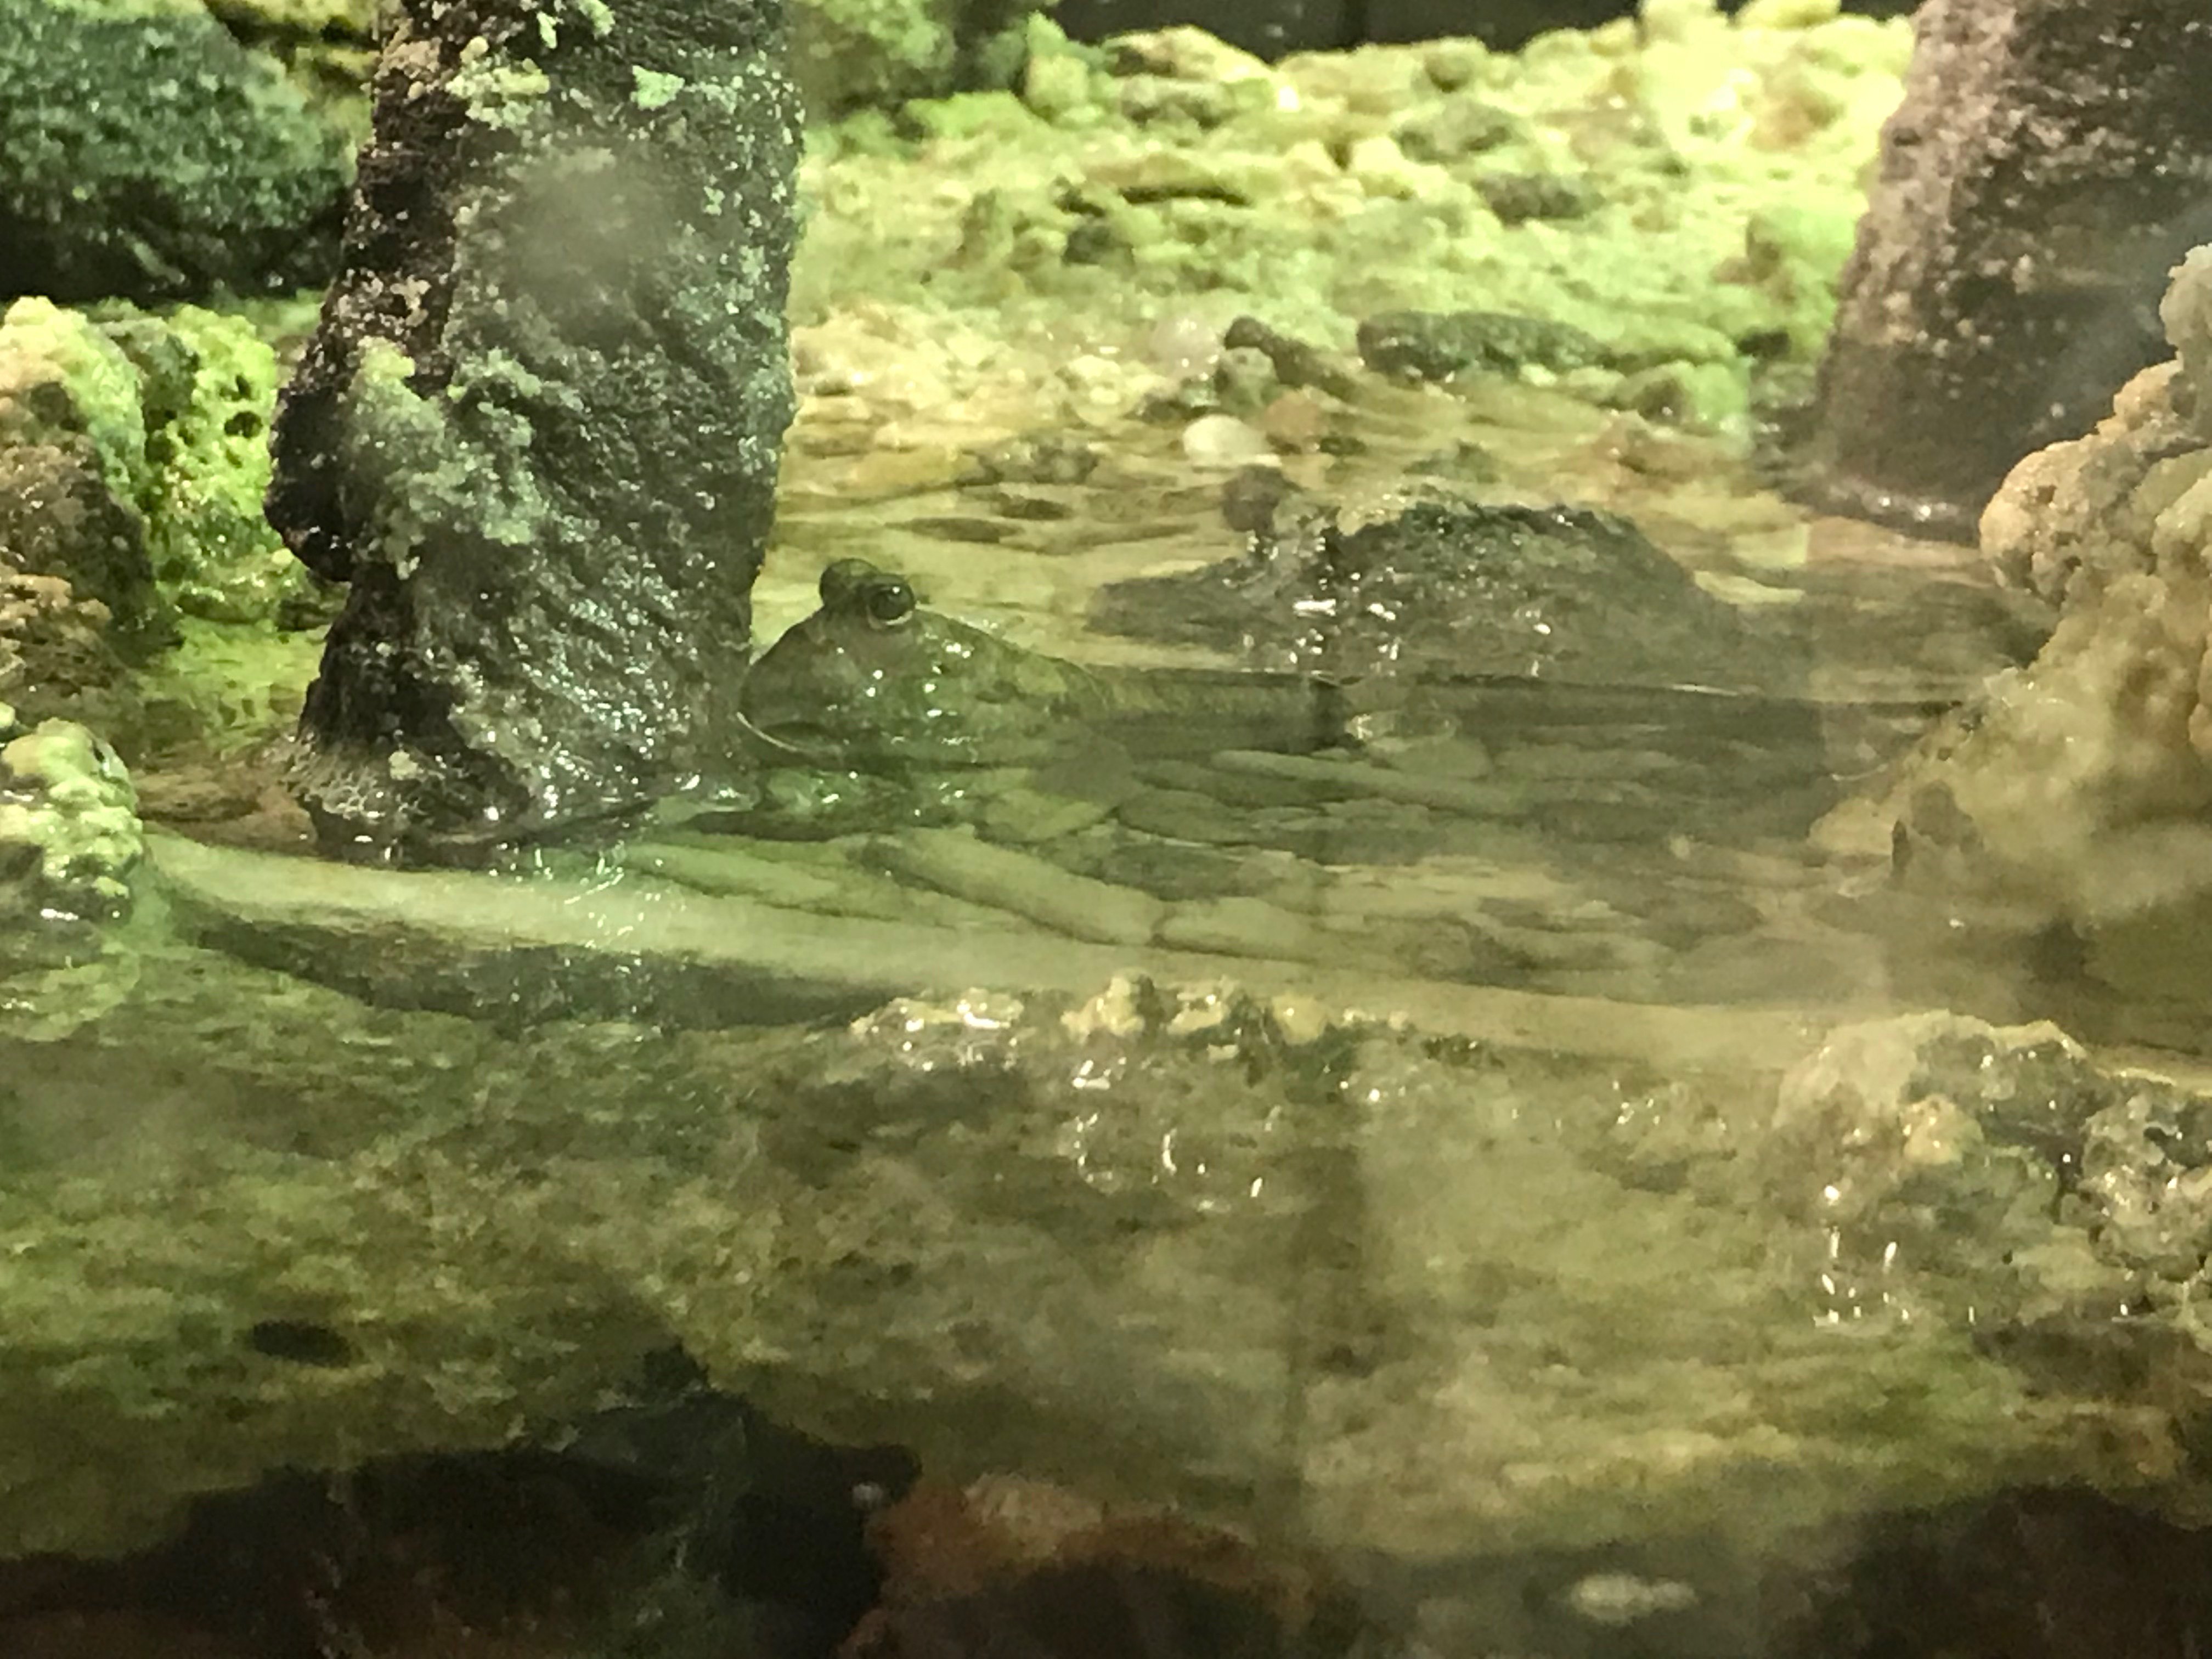 足立区生物園 マングローブの世界のミナミトビハゼ 水槽の真ん中の陸地でピョンピョンと跳ねている姿が見られます 魚だけど陸上で暮らすトビハゼの仲間は英語でマッドスキッパ 泥の上を跳ぶもの と呼ばれています 名前の通り 胸鰭を使って陸地を